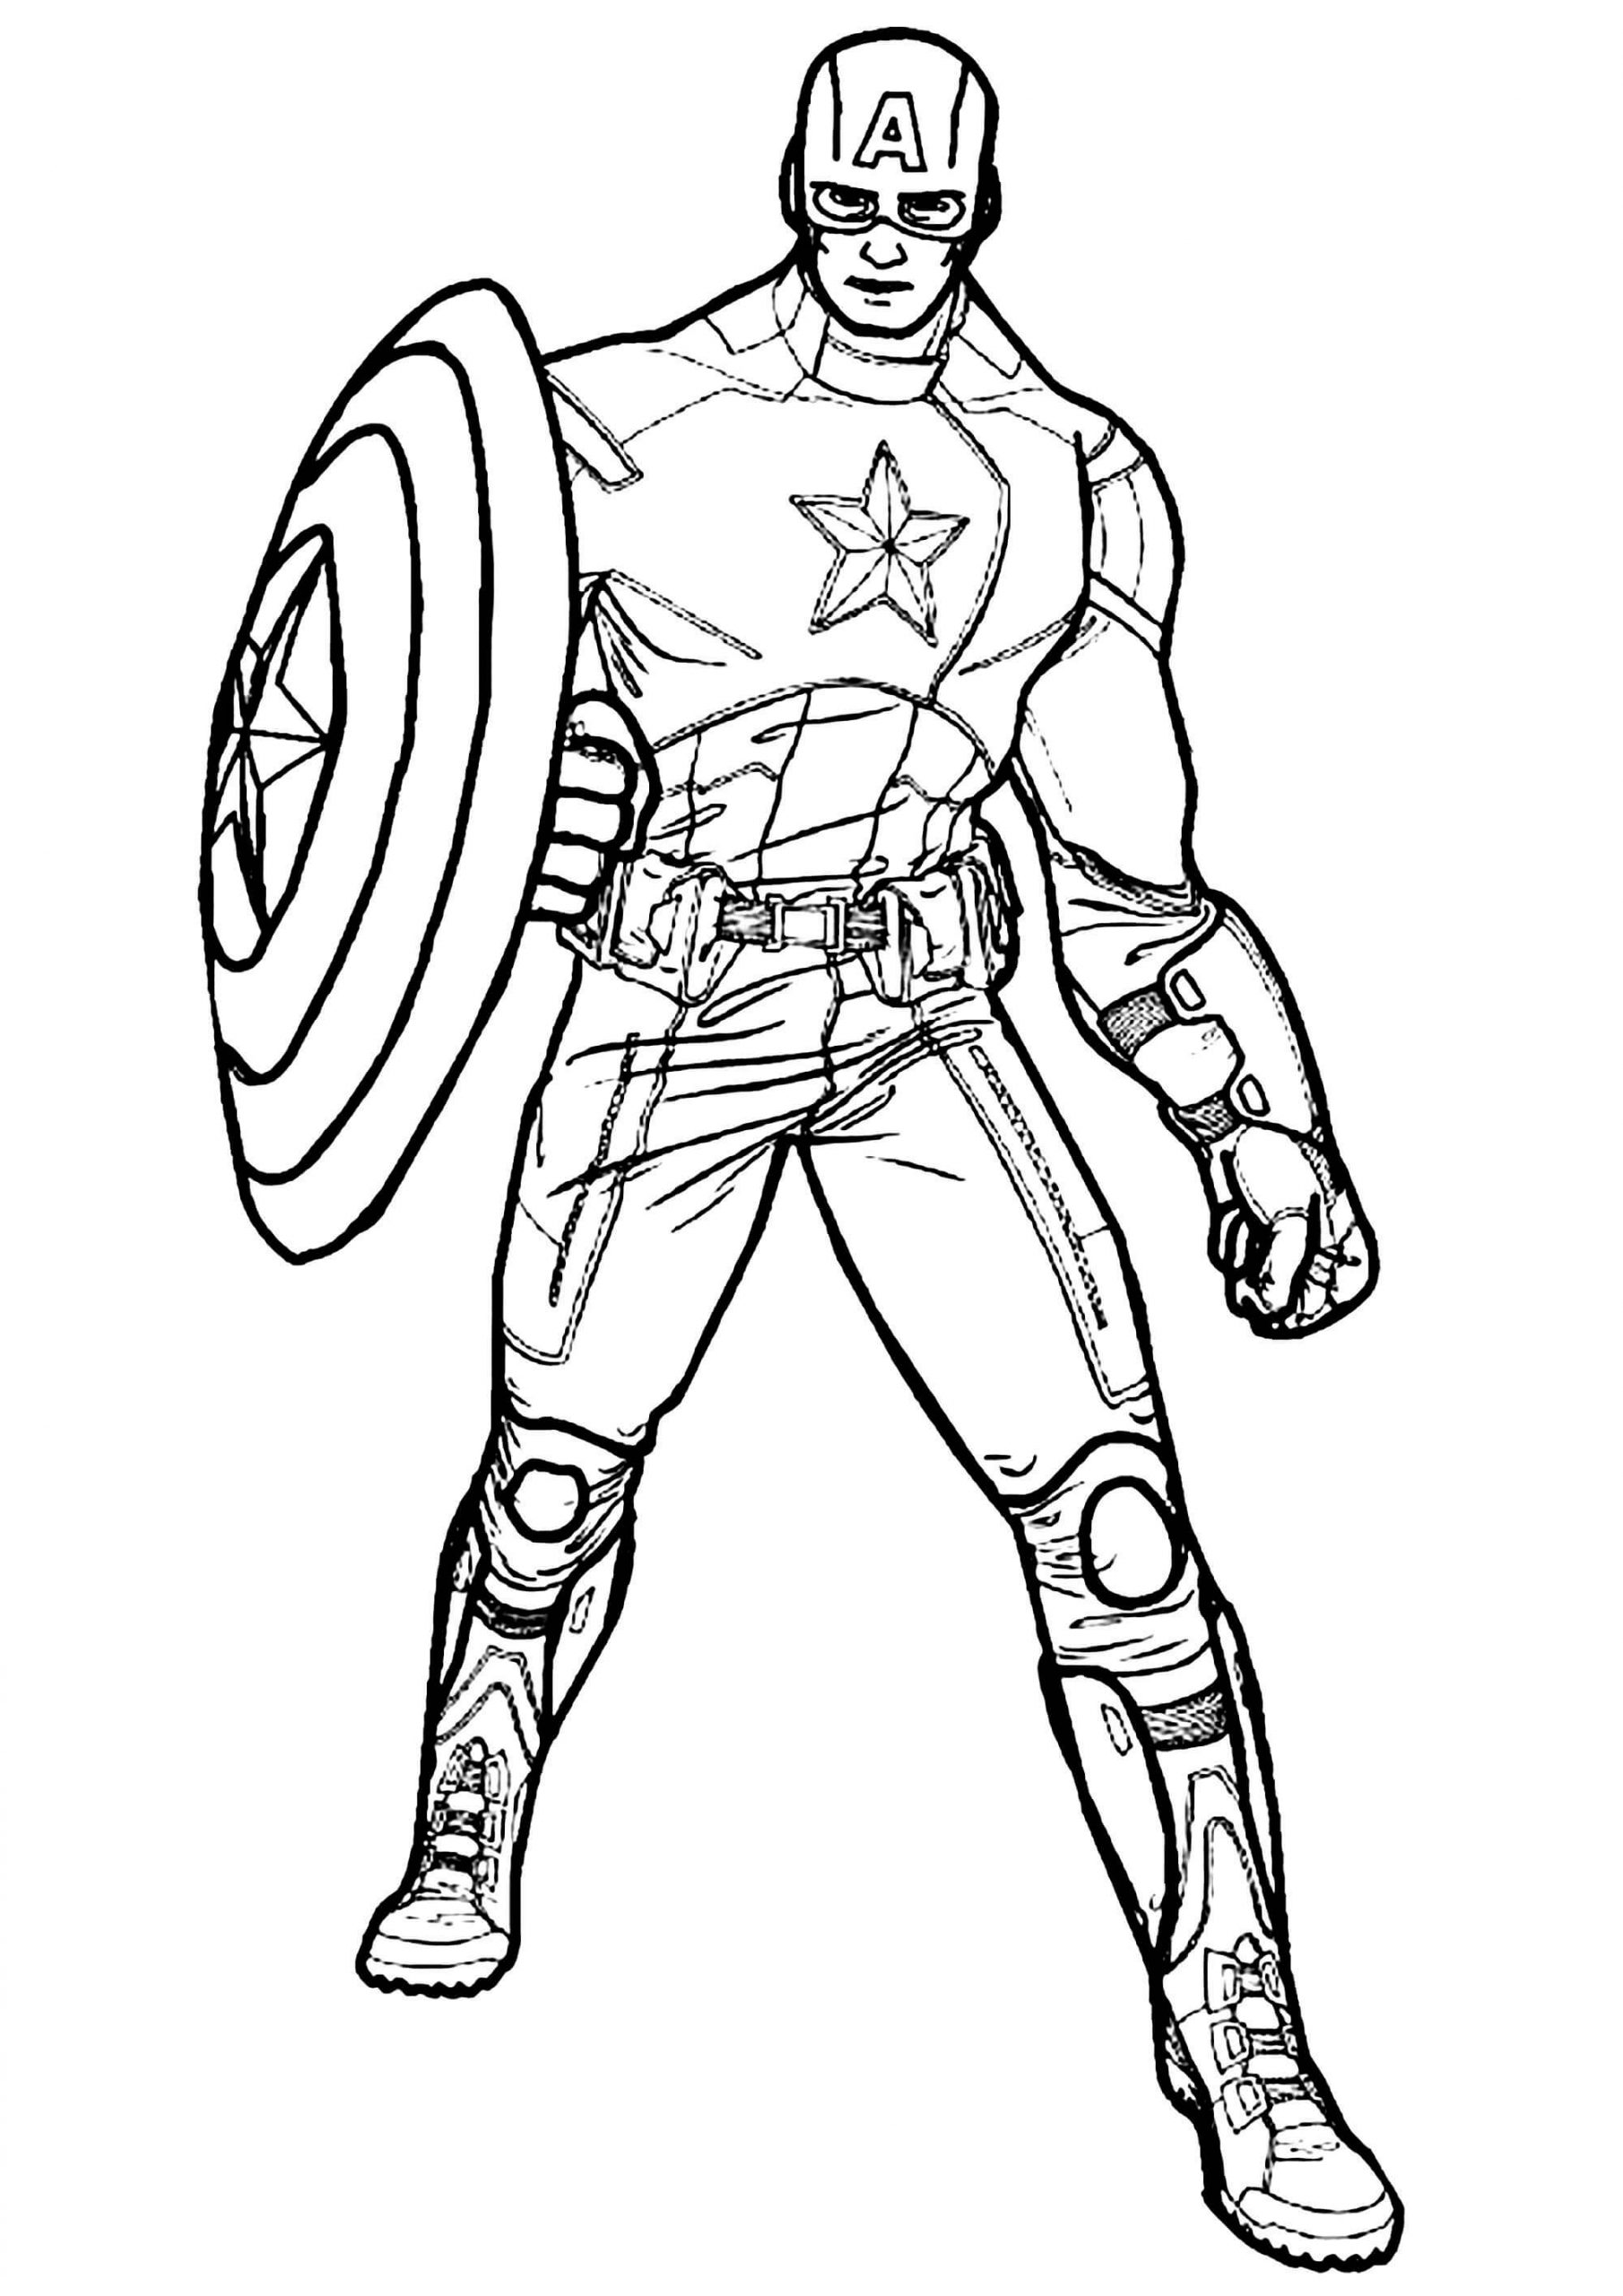 Captain America in Avengers 1